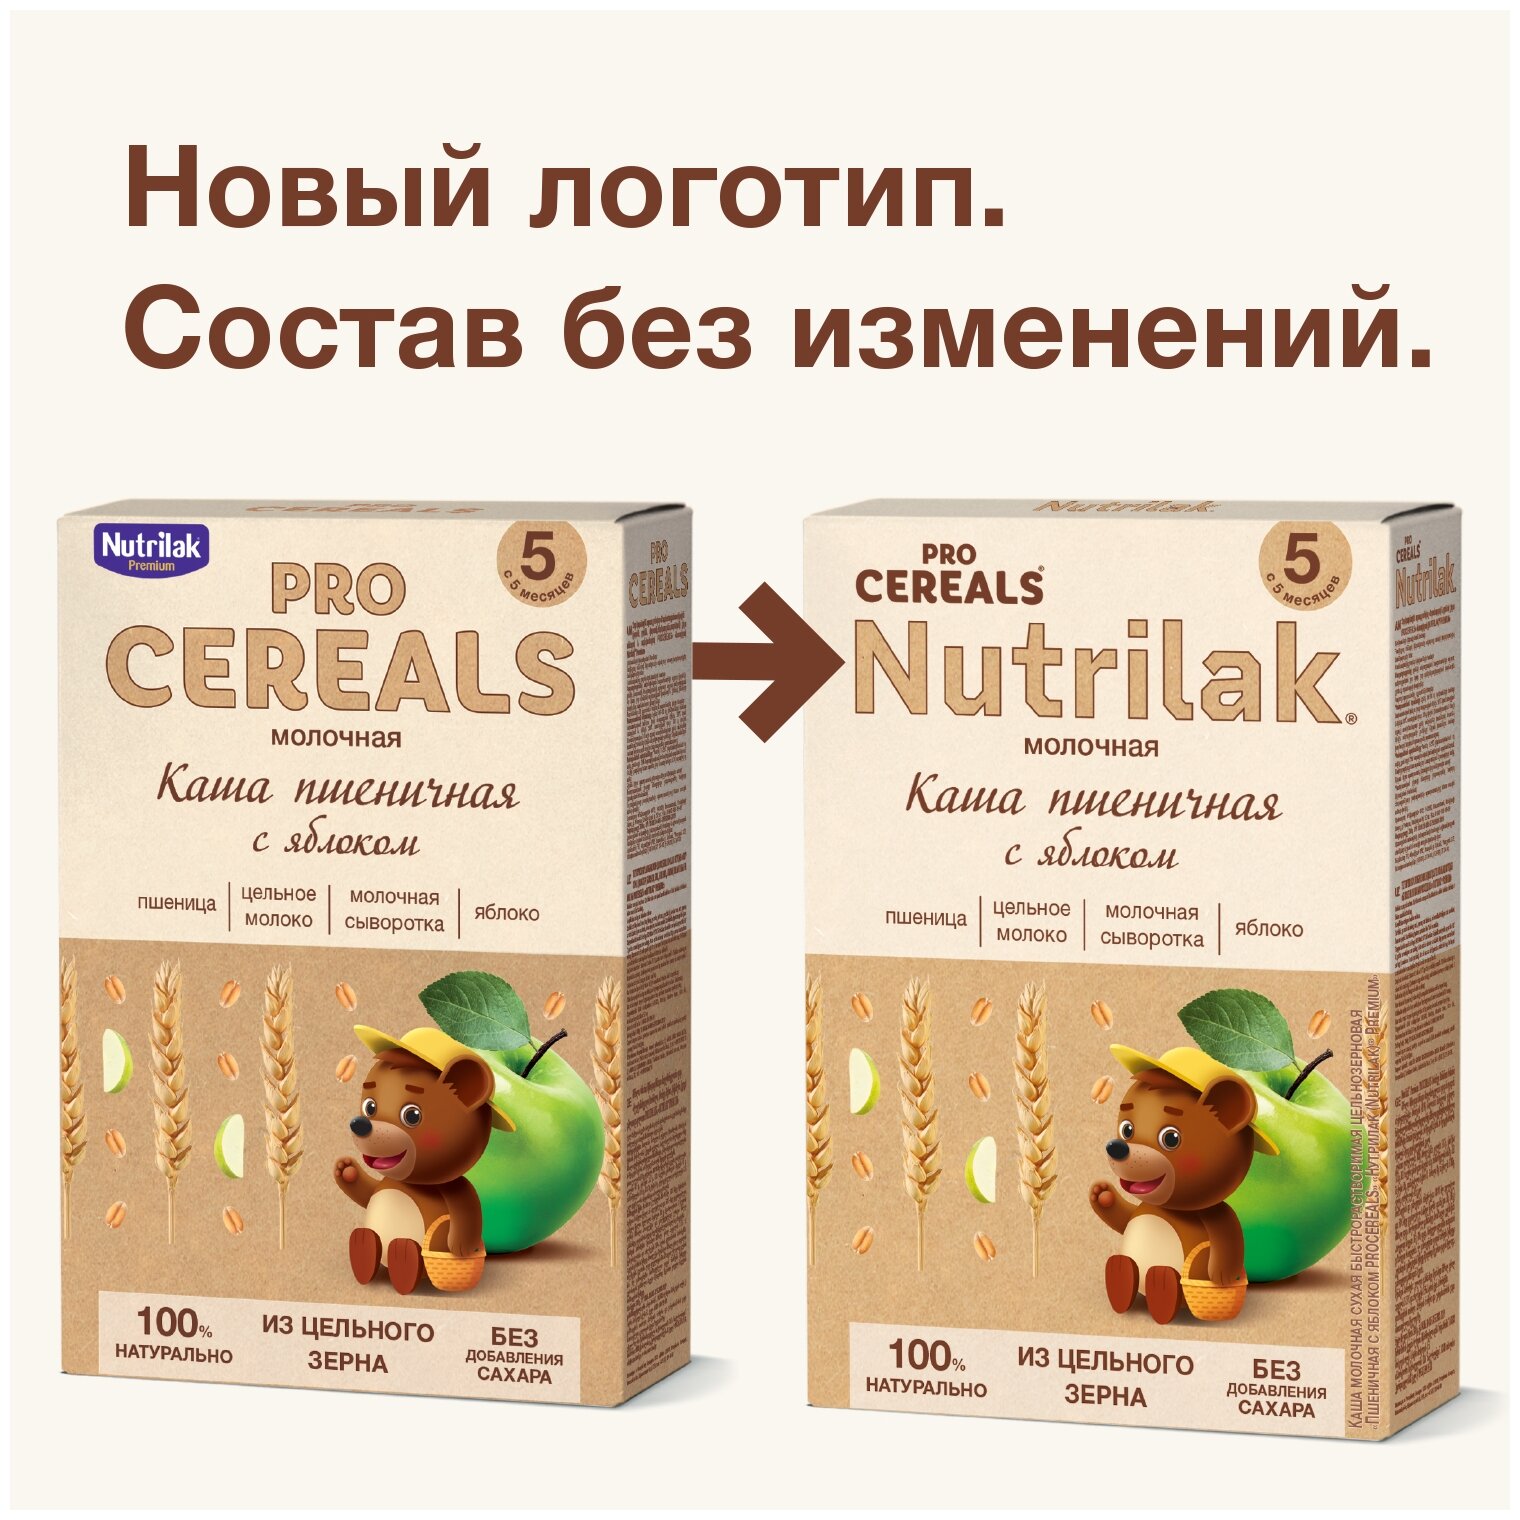 Каша пшеничная с яблоком Nutrilak Premium Pro Cereals цельнозерновая молочная, 200гр - фото №2